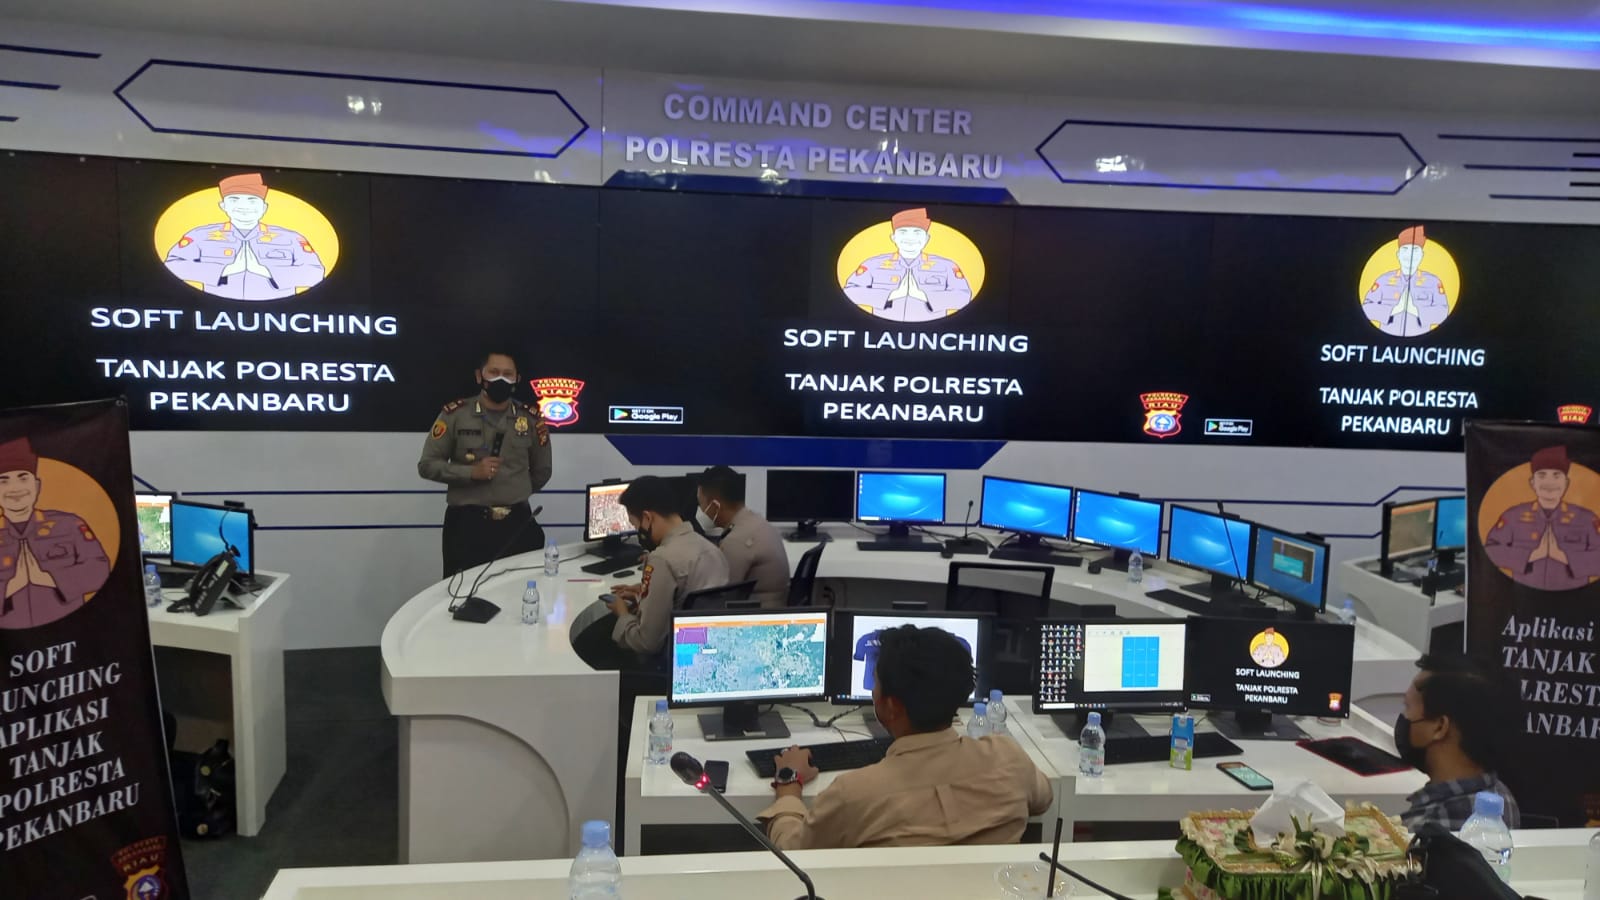 Bimbingan Teknis Dalam Rangka Soft Launching Aplikasi 'Tanjak Polresta Pekanbaru'